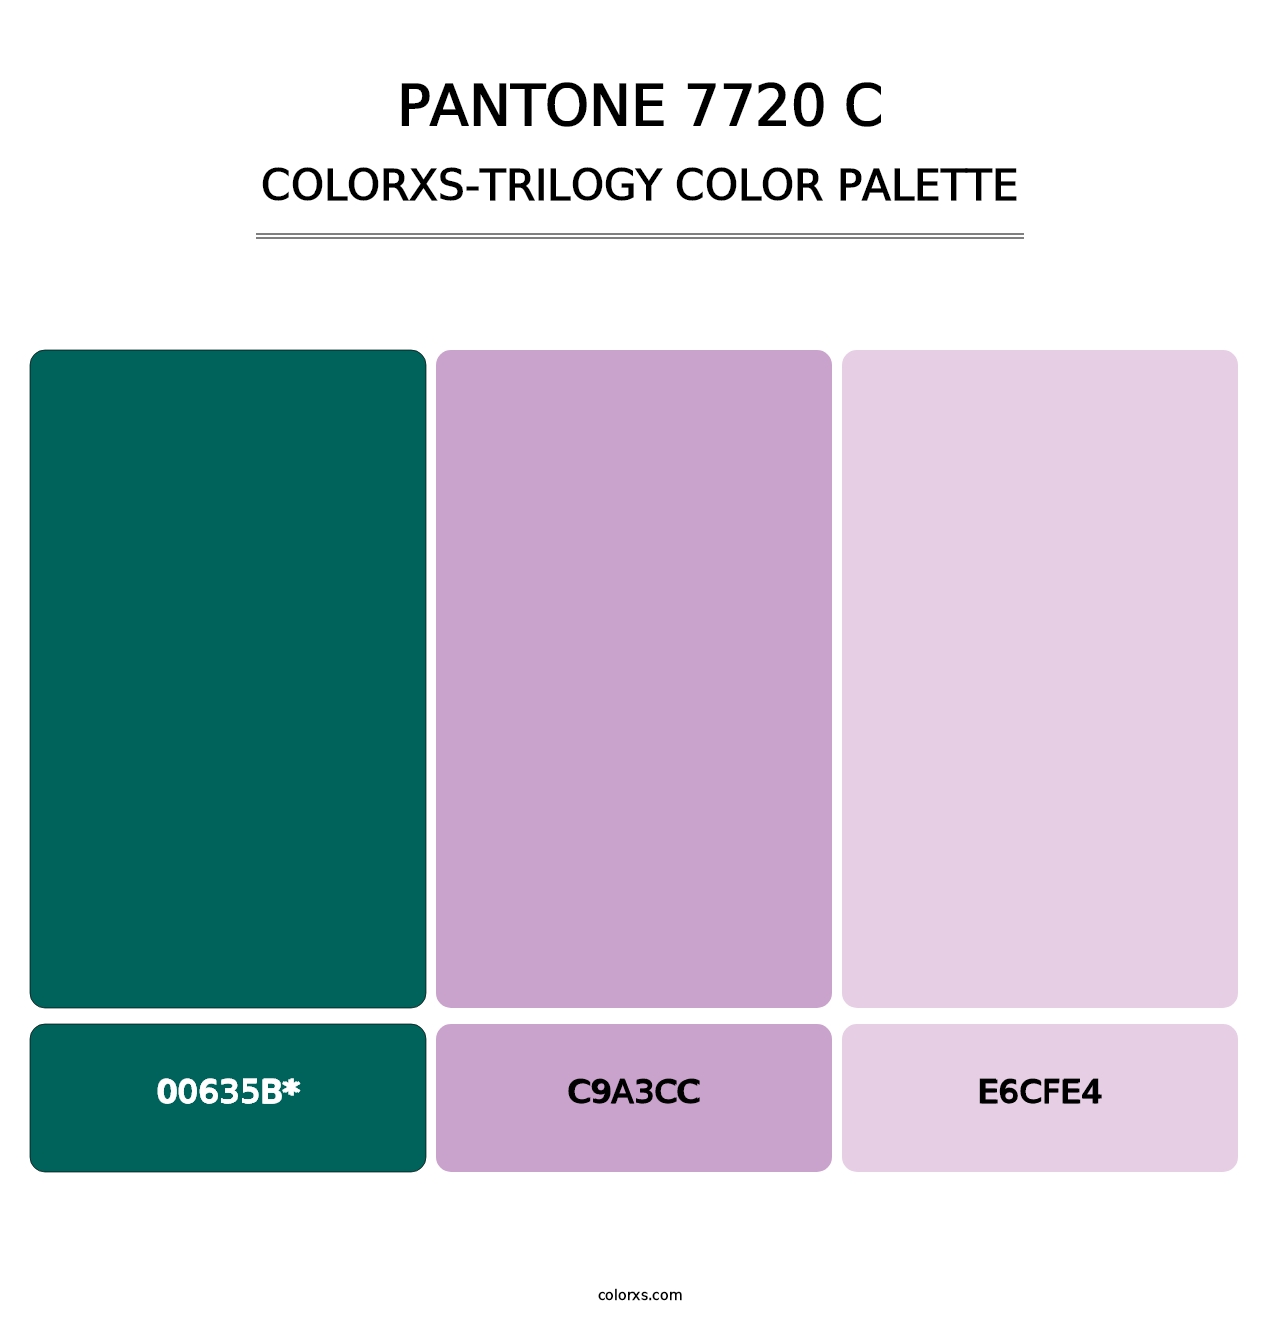 PANTONE 7720 C - Colorxs Trilogy Palette